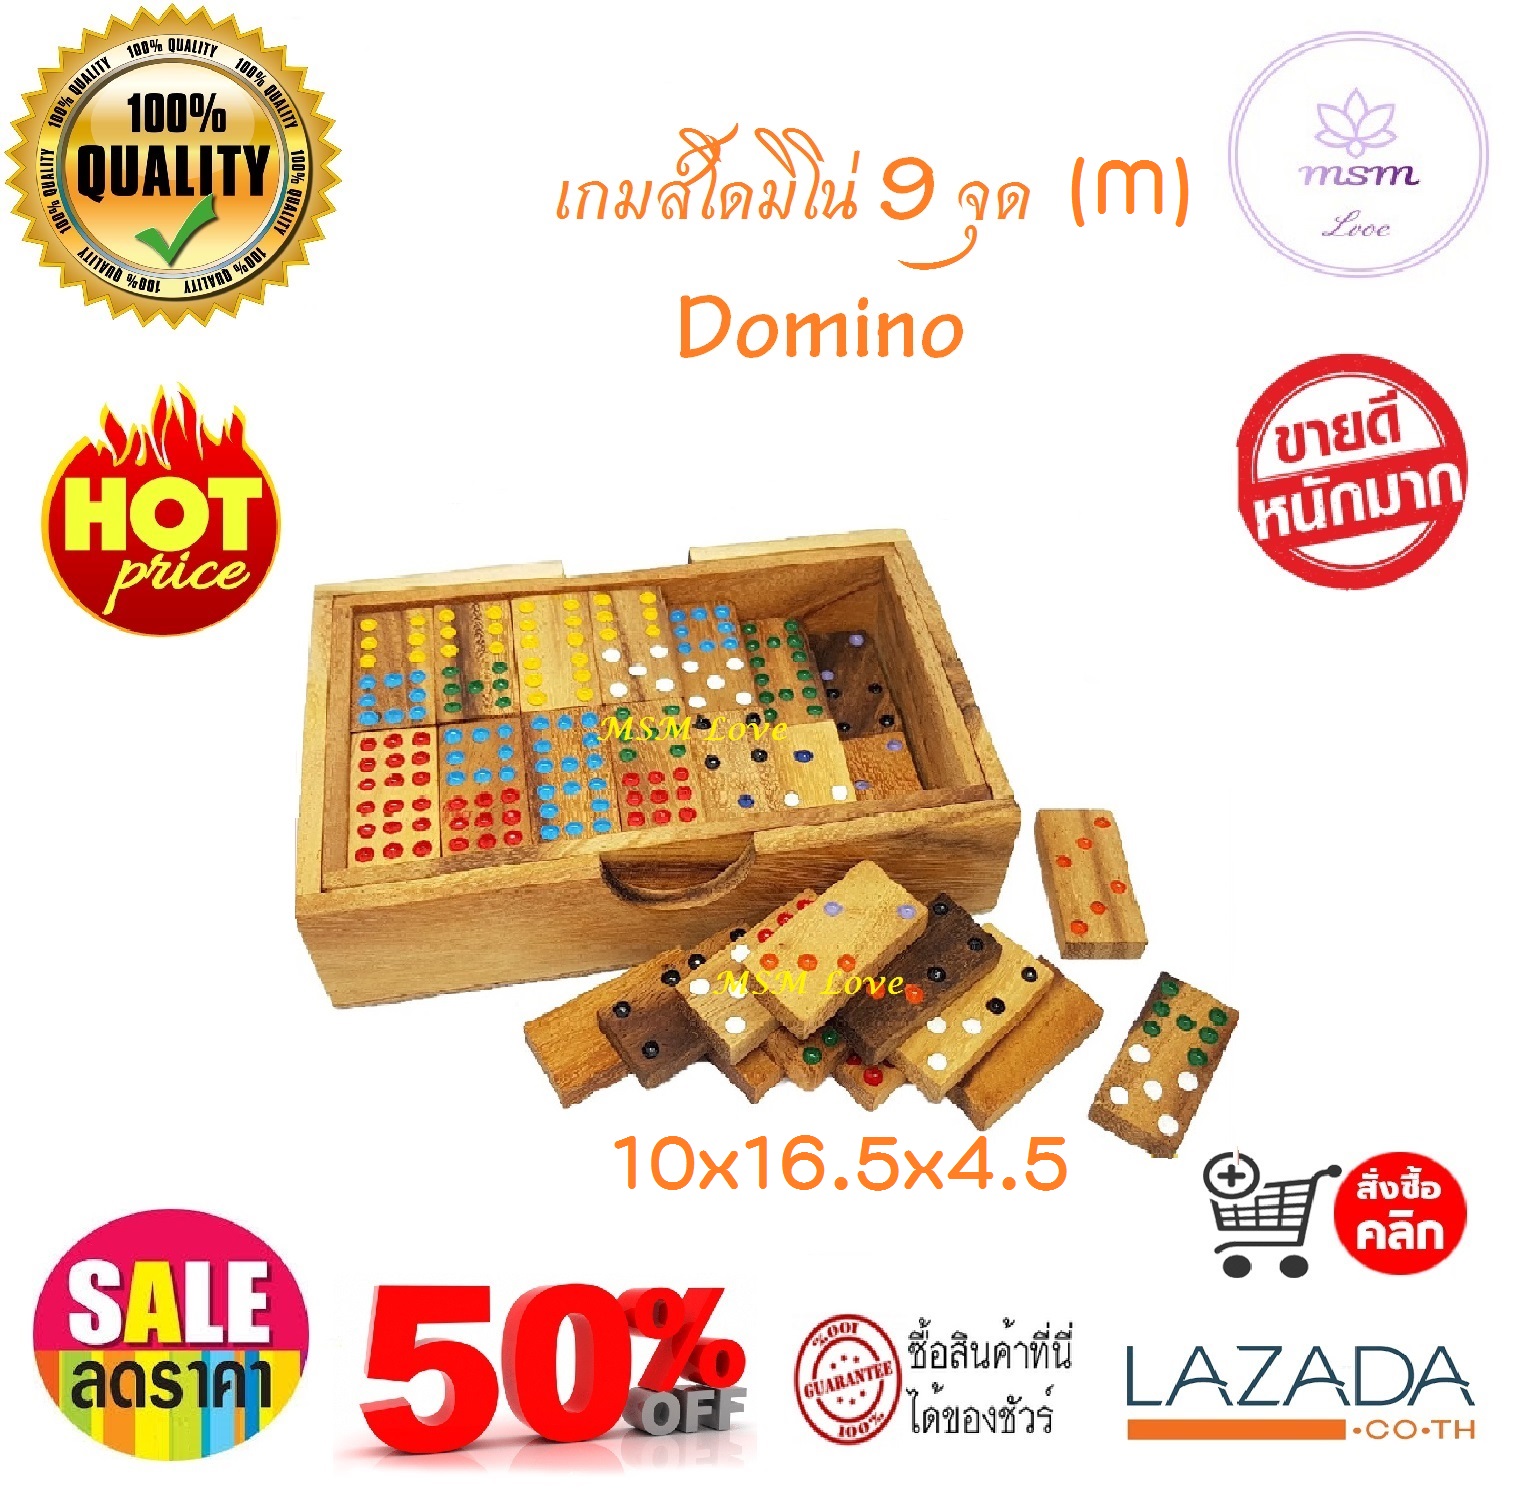 ตัวต่อ ตัวต่อไม้ โดมิโน่ โดมิโน่ไม้ 9 จุด ชุดละ 56 ชิ้น ขนาดกลาง (M) 10x16.5x4.5 เซนติเมตร   Nine Domino Wood Domino Wood Toy ของเล่นไม้เสริมพัฒนาการ เสริมทักษะ ของเล่นเด็ก และผู้ใหญ่ ของเล่นไม้ ใช้เป็นของตกแต่ง ร้านและที่พักอาศัย สุดคลาสสิค